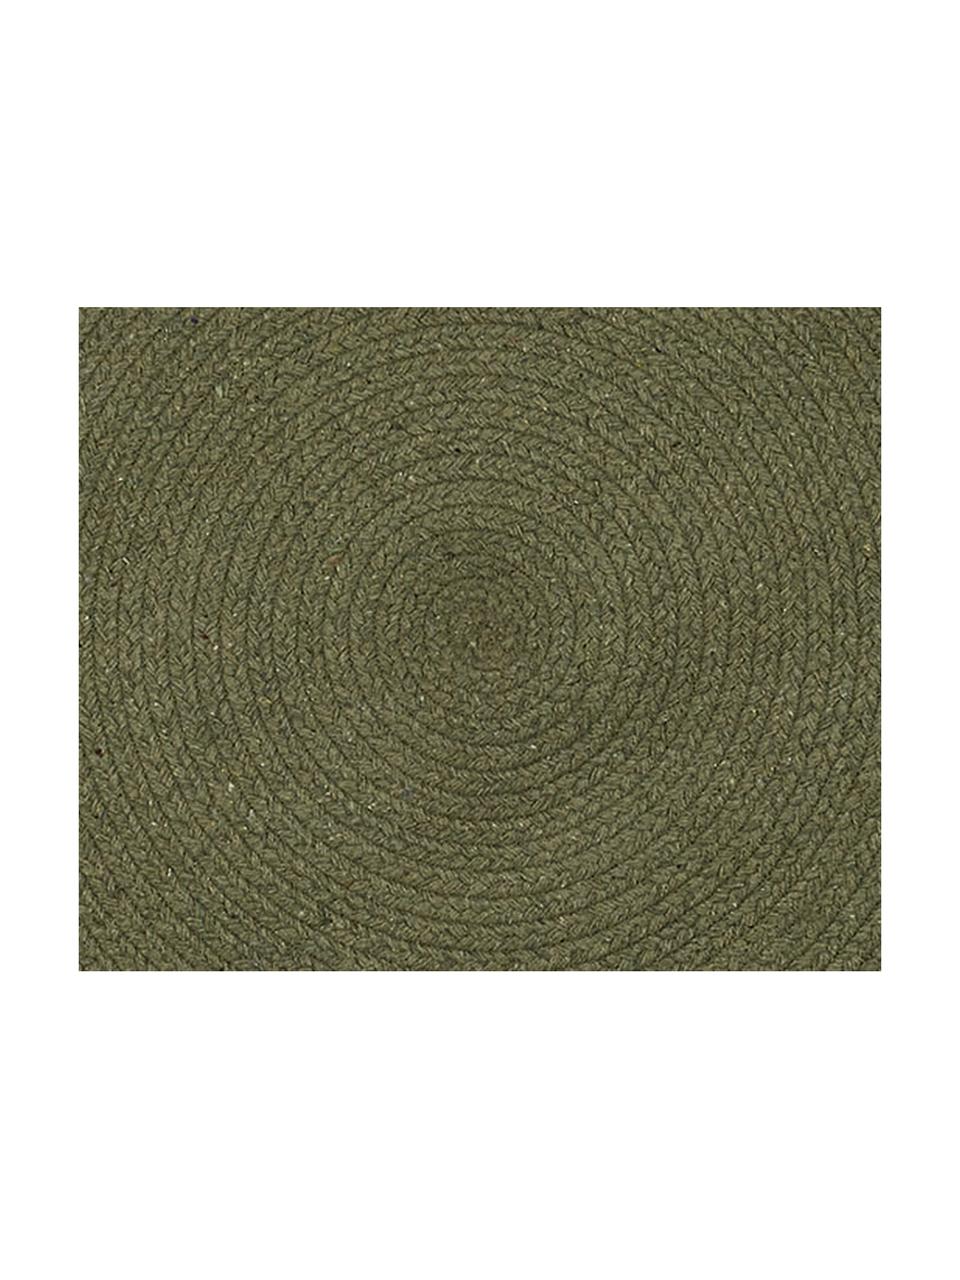 Runder Teppich Moon aus recycelter Baumwolle, 100% Recycelte Baumwolle, Khaki, Ø 90 cm (Größe XS)